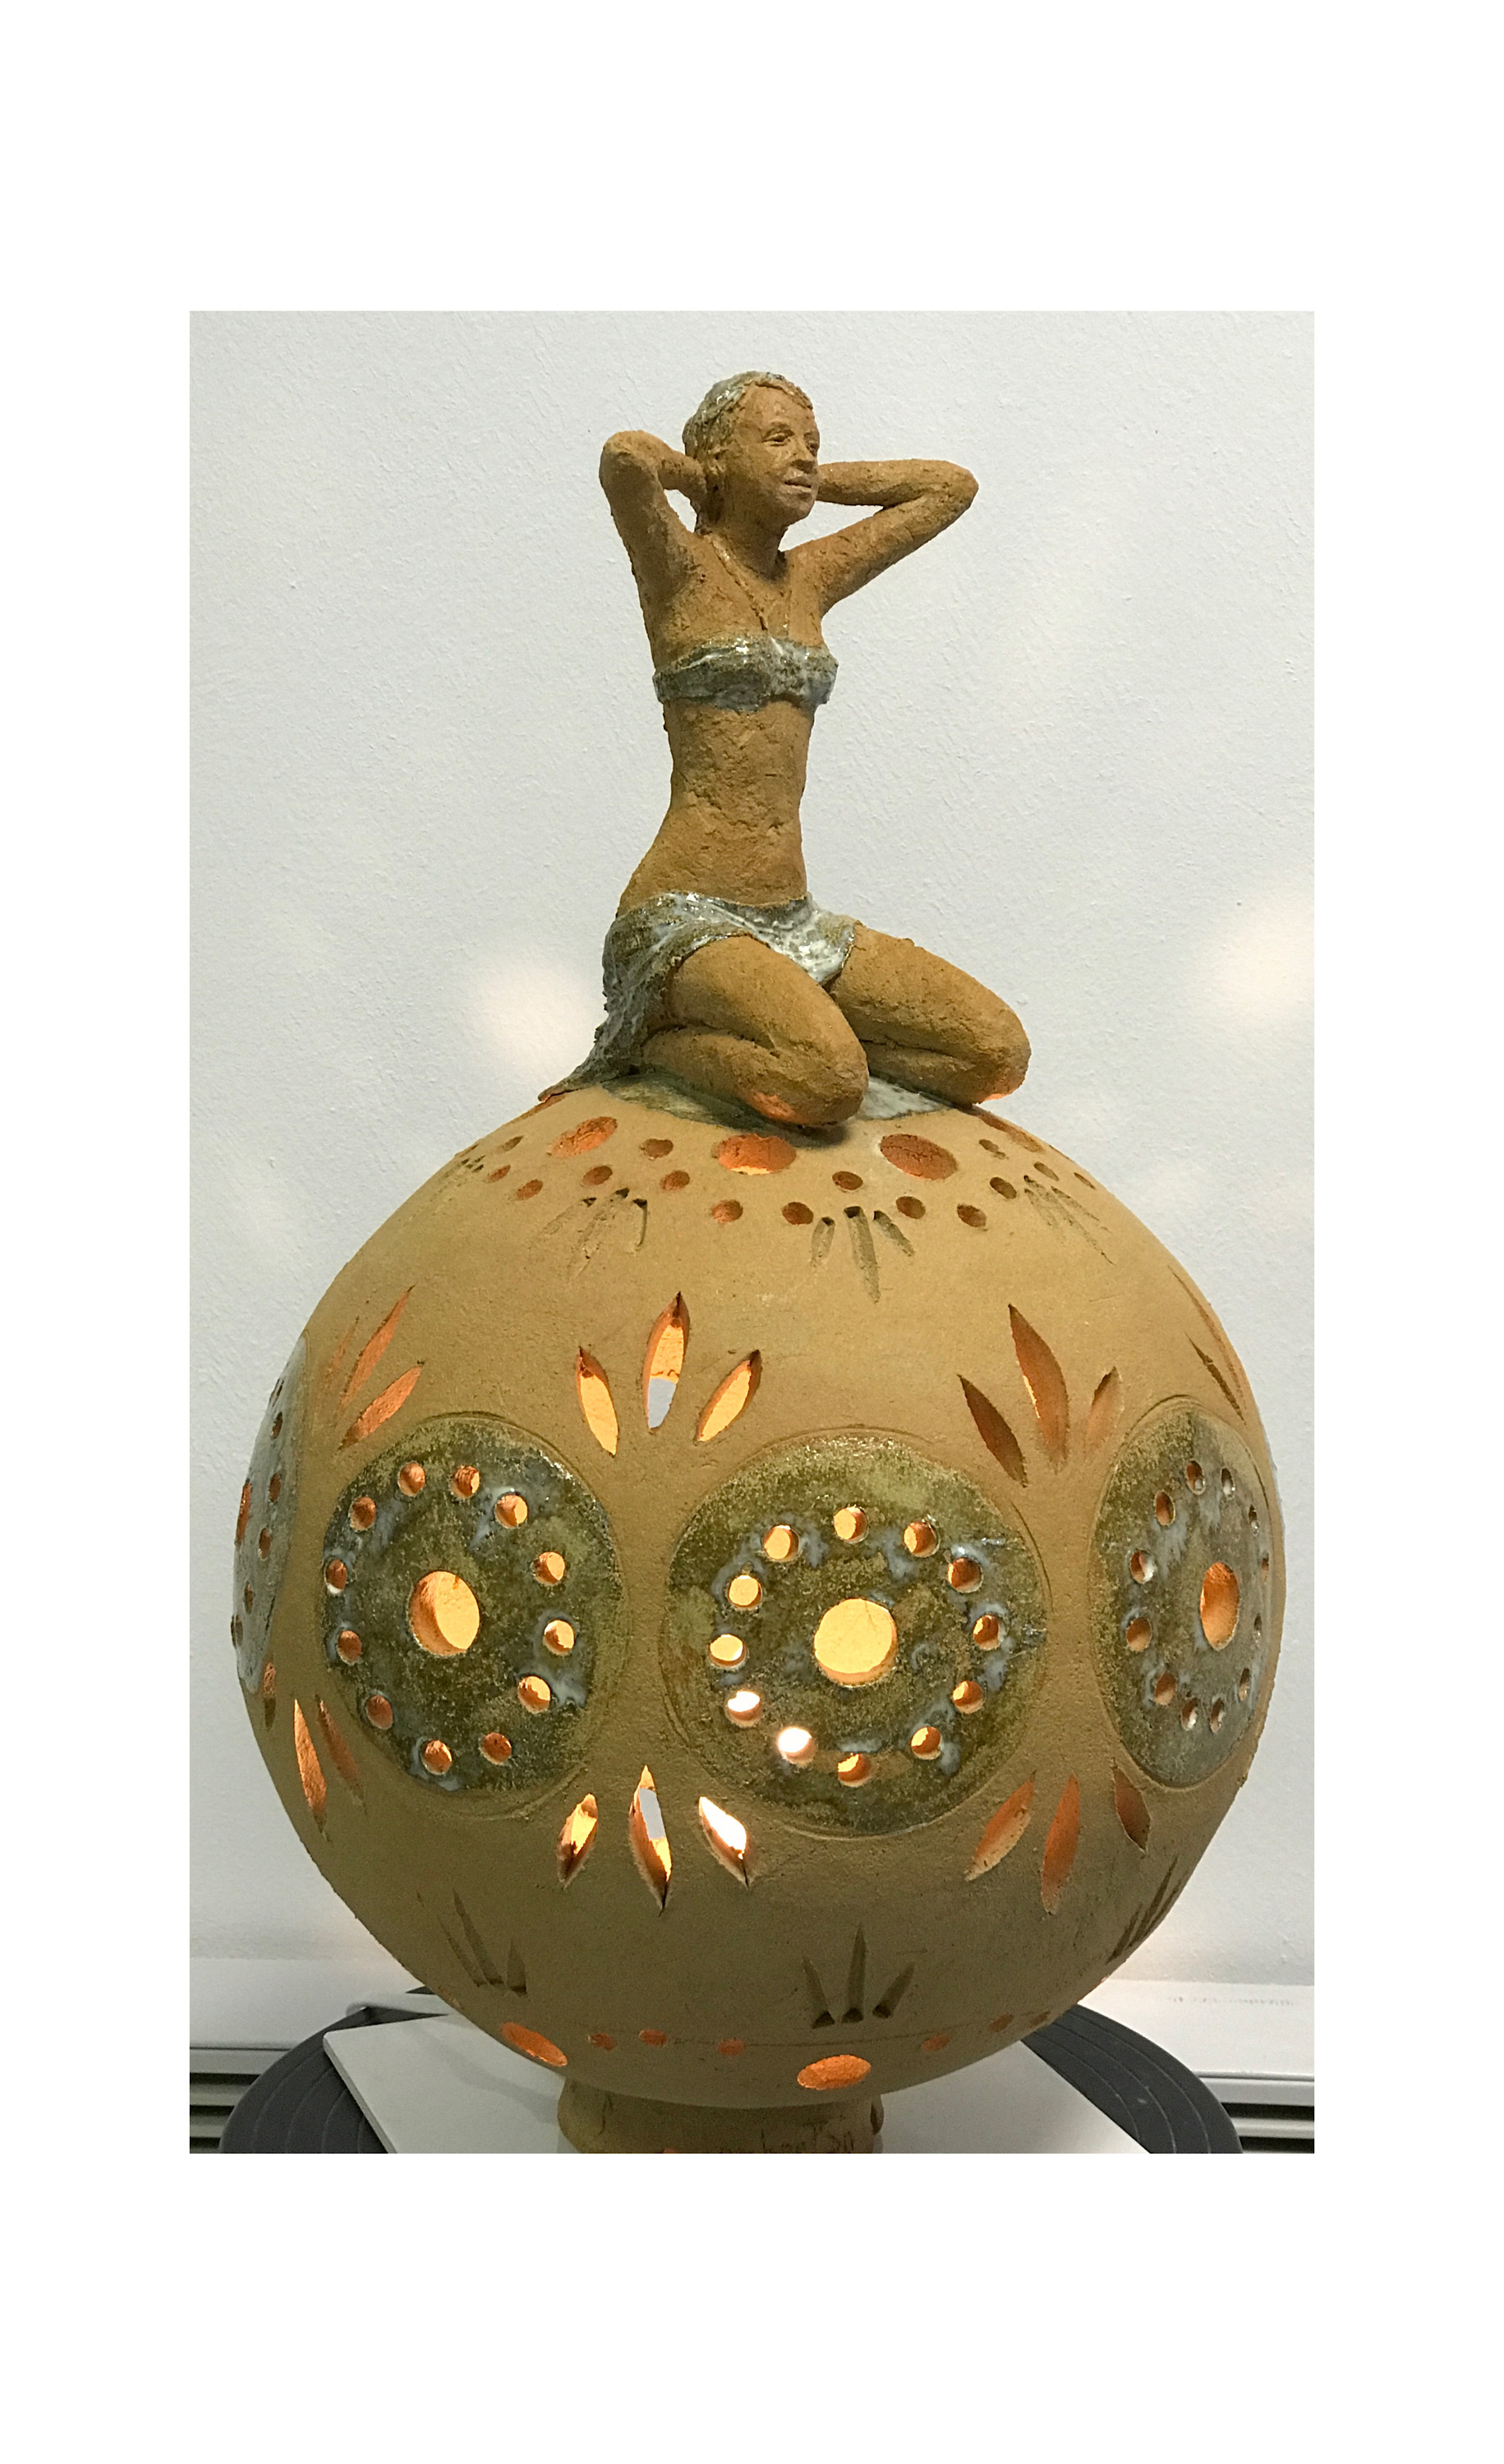 lampe sculpture sphère avec personnage terre cuite emmaillée grès